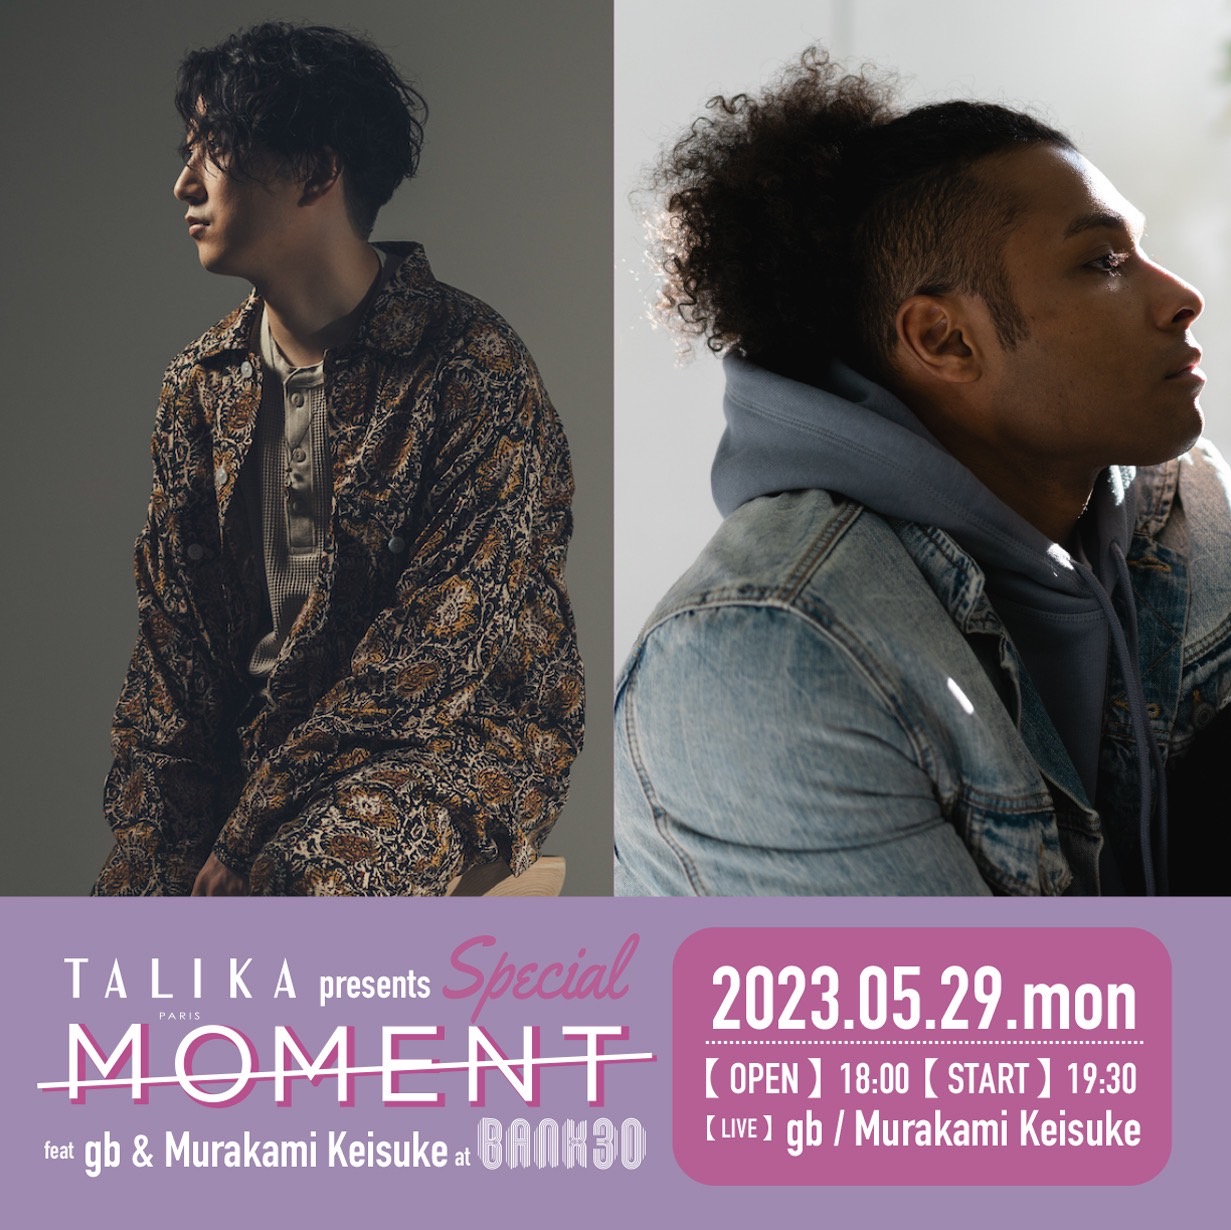 TALIKA JAPON presents MOMENT Special feat. gb & Murakami Keisuke